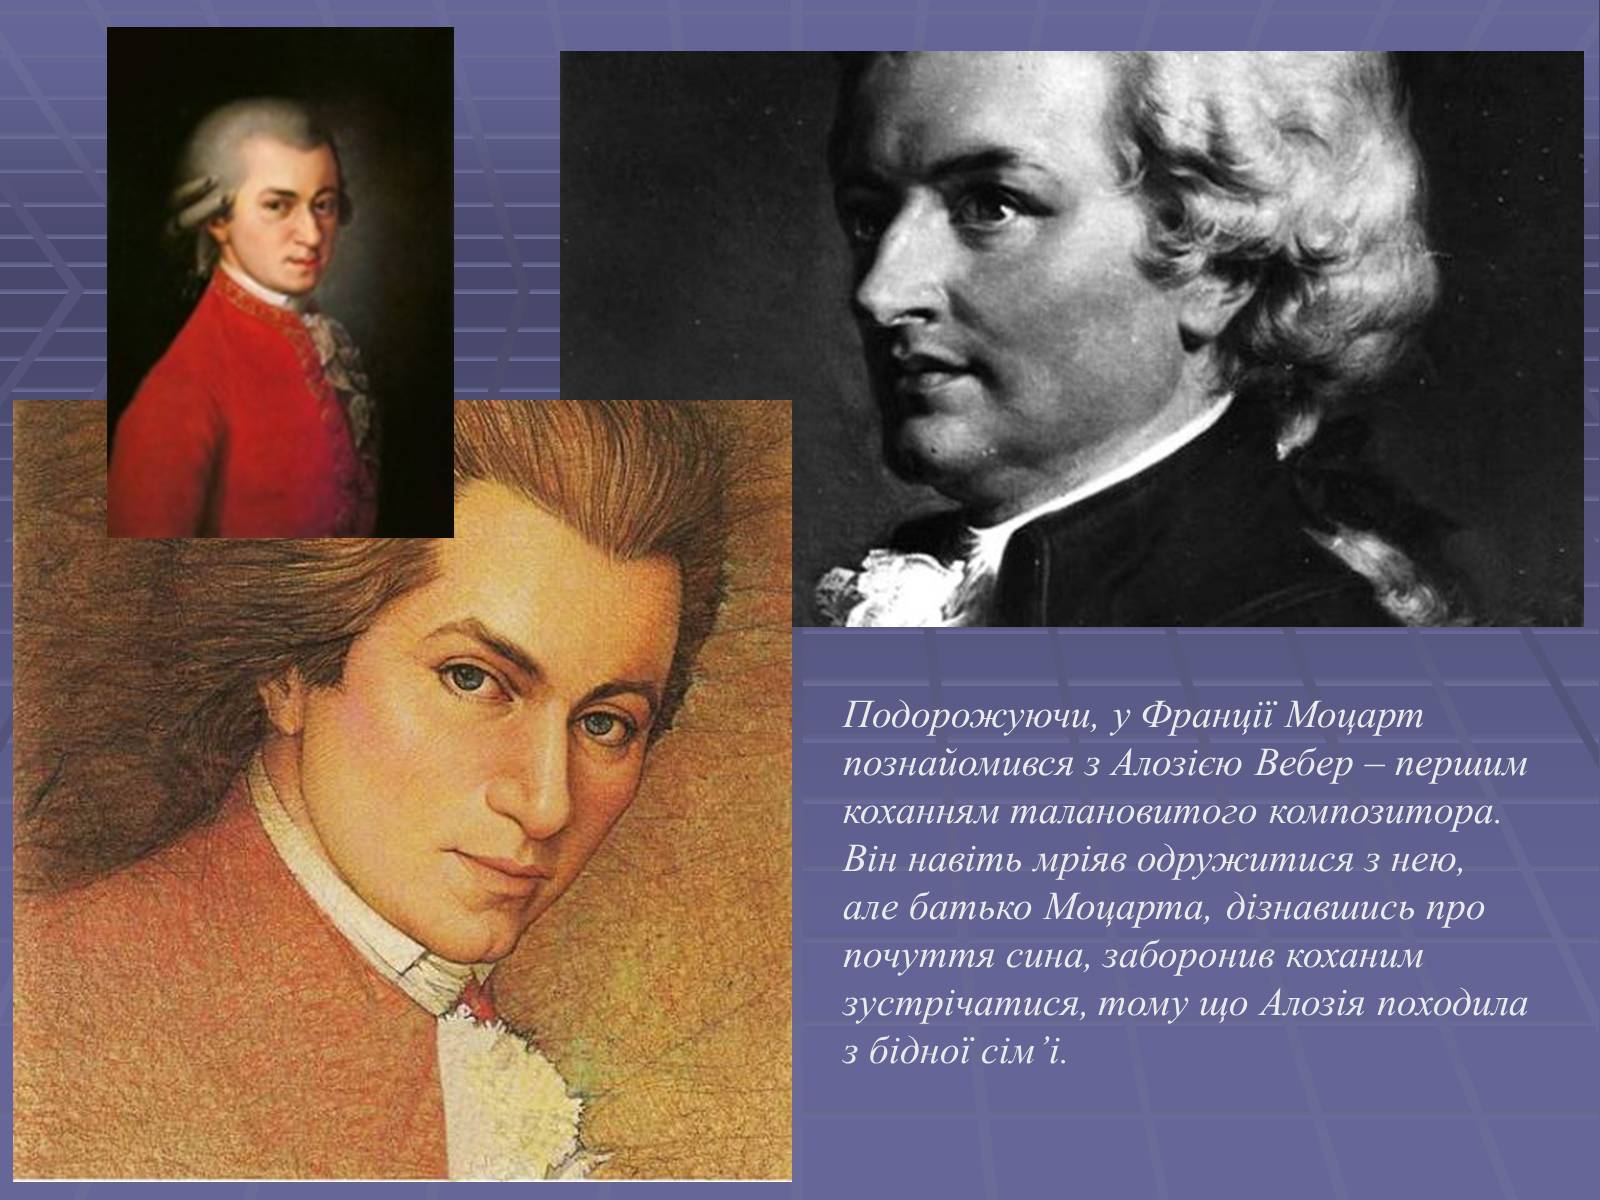 Интересные факты из биографии моцарта. Биография Моцарта. Биография Моцарта кратко. Произведения Моцарта самые известные.